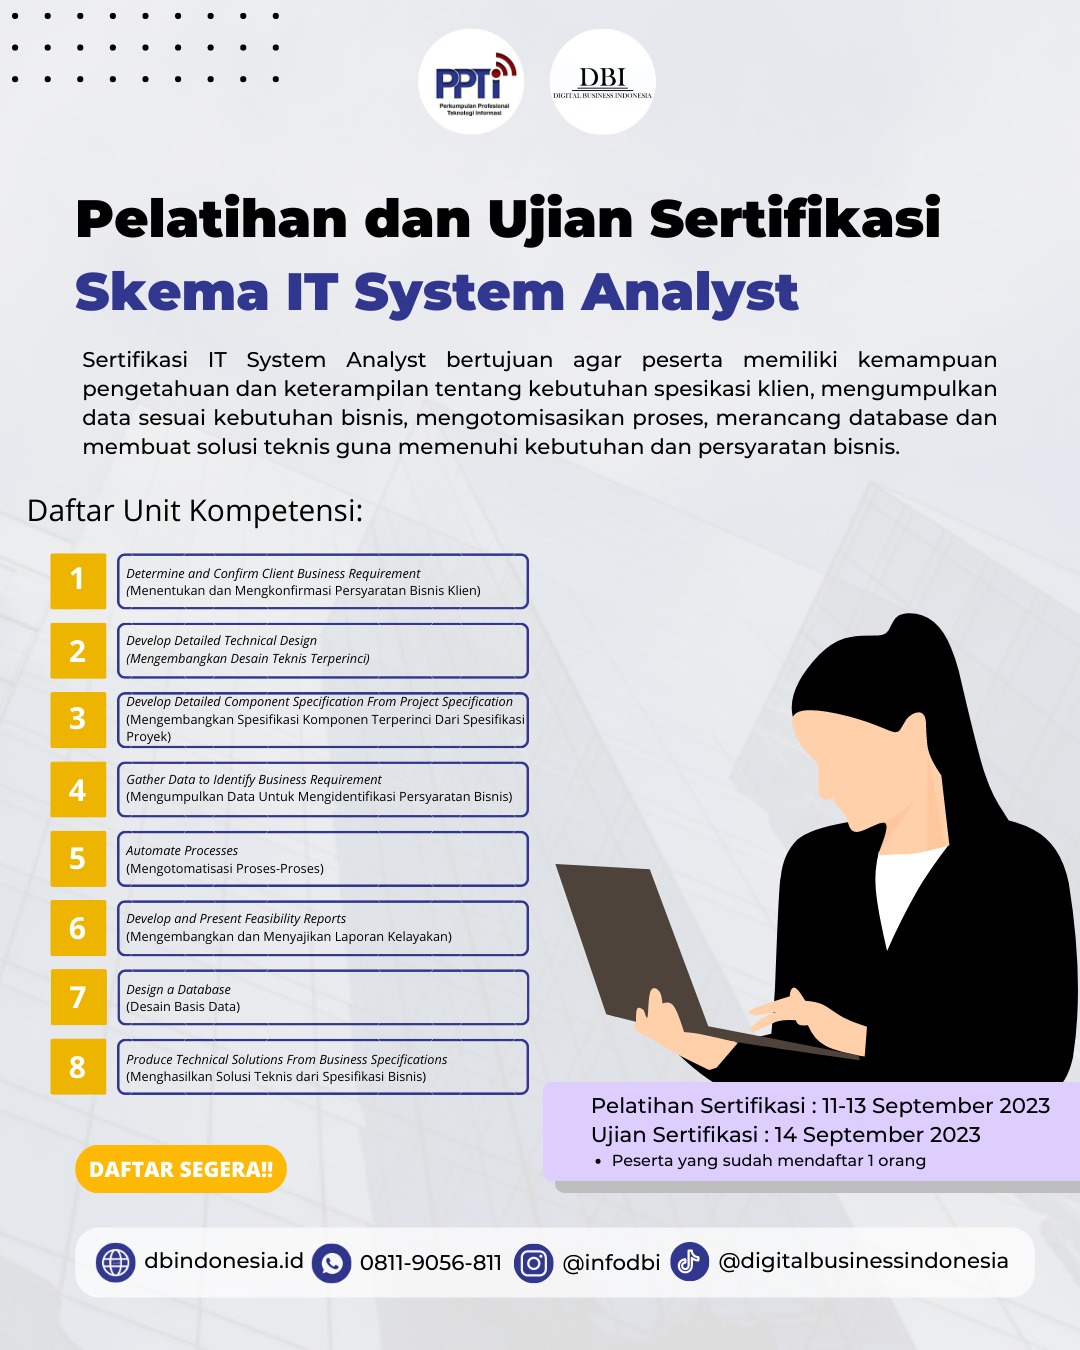 Pelatihan Sertifikasi dan Uji Sertifikasi Skema IT System Analyst